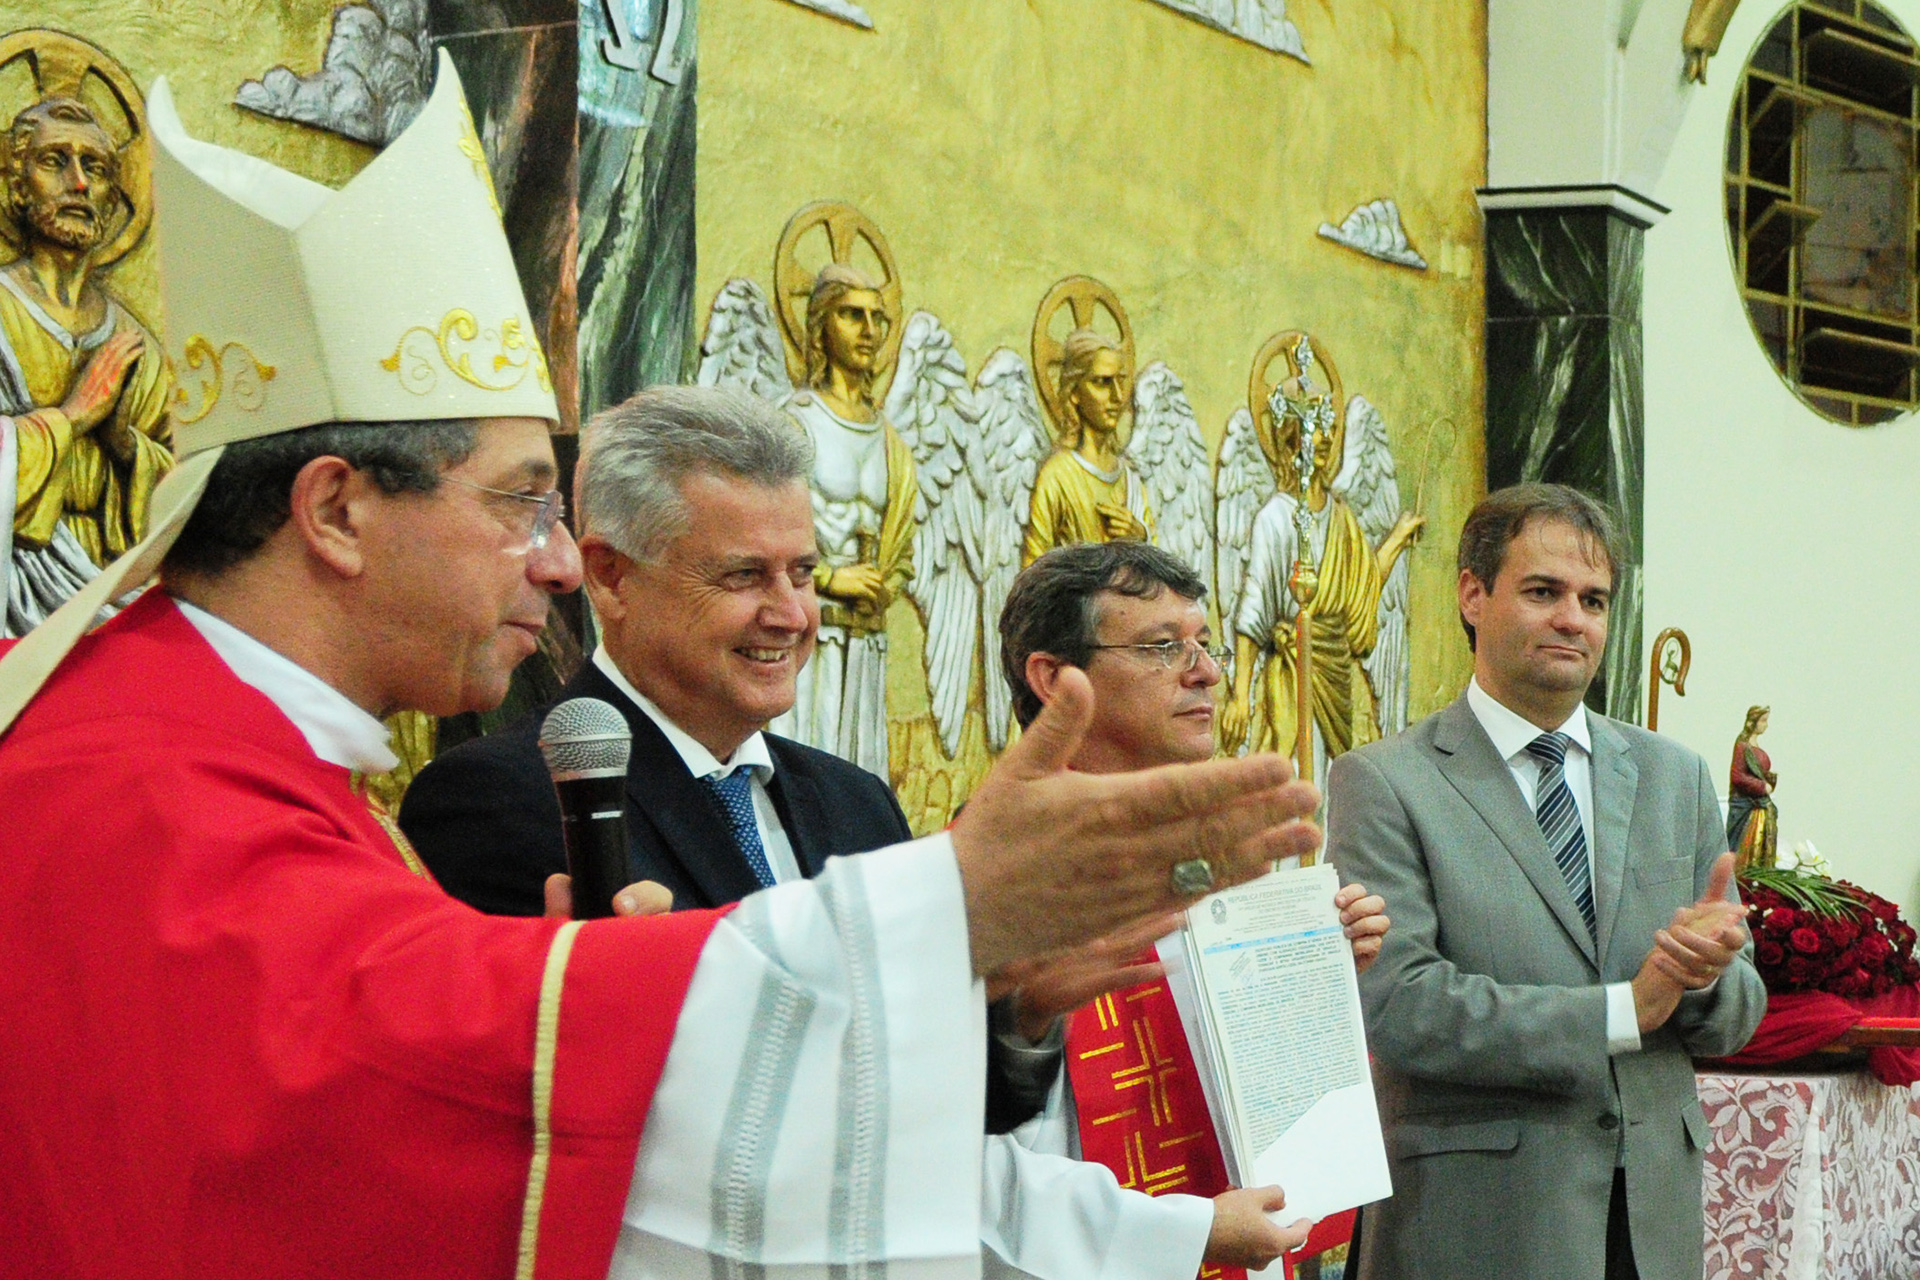 Documento que dá segurança jurídica à paróquia foi entregue pelo governador Rodrigo Rollemberg no dia de Santa Luzia. Capela São José também foi beneficiada